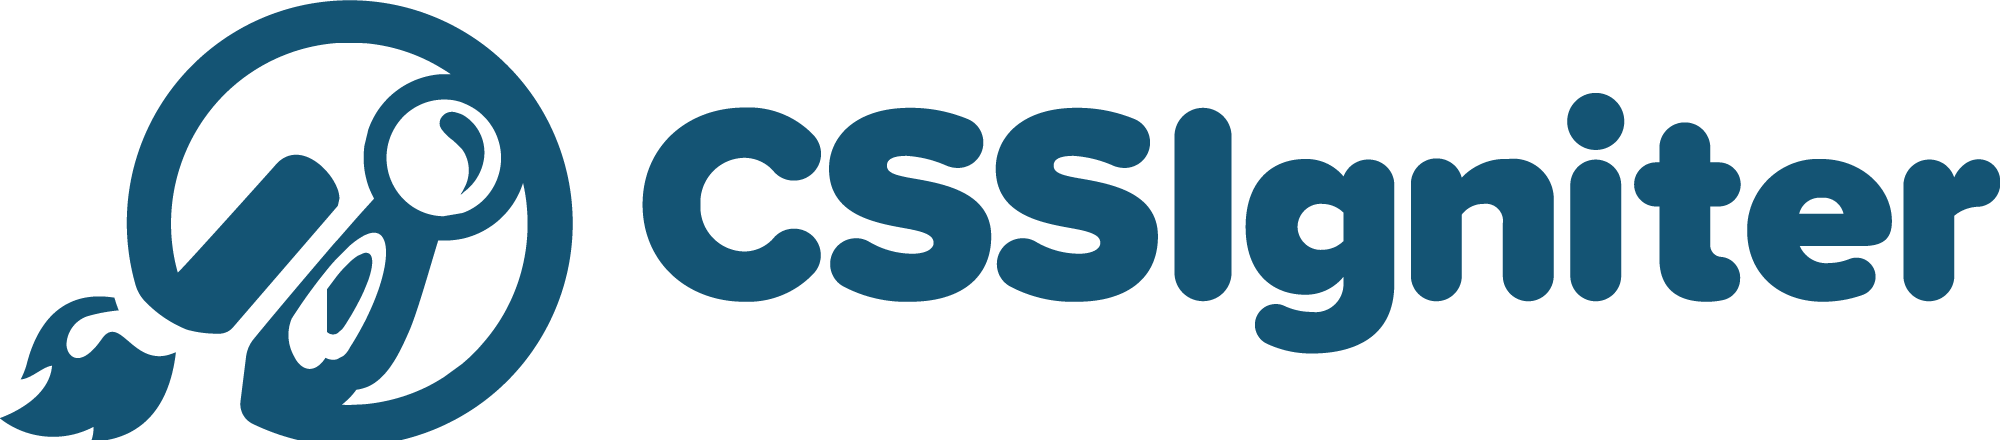 CSSIgniter Black Friday Deal Logo